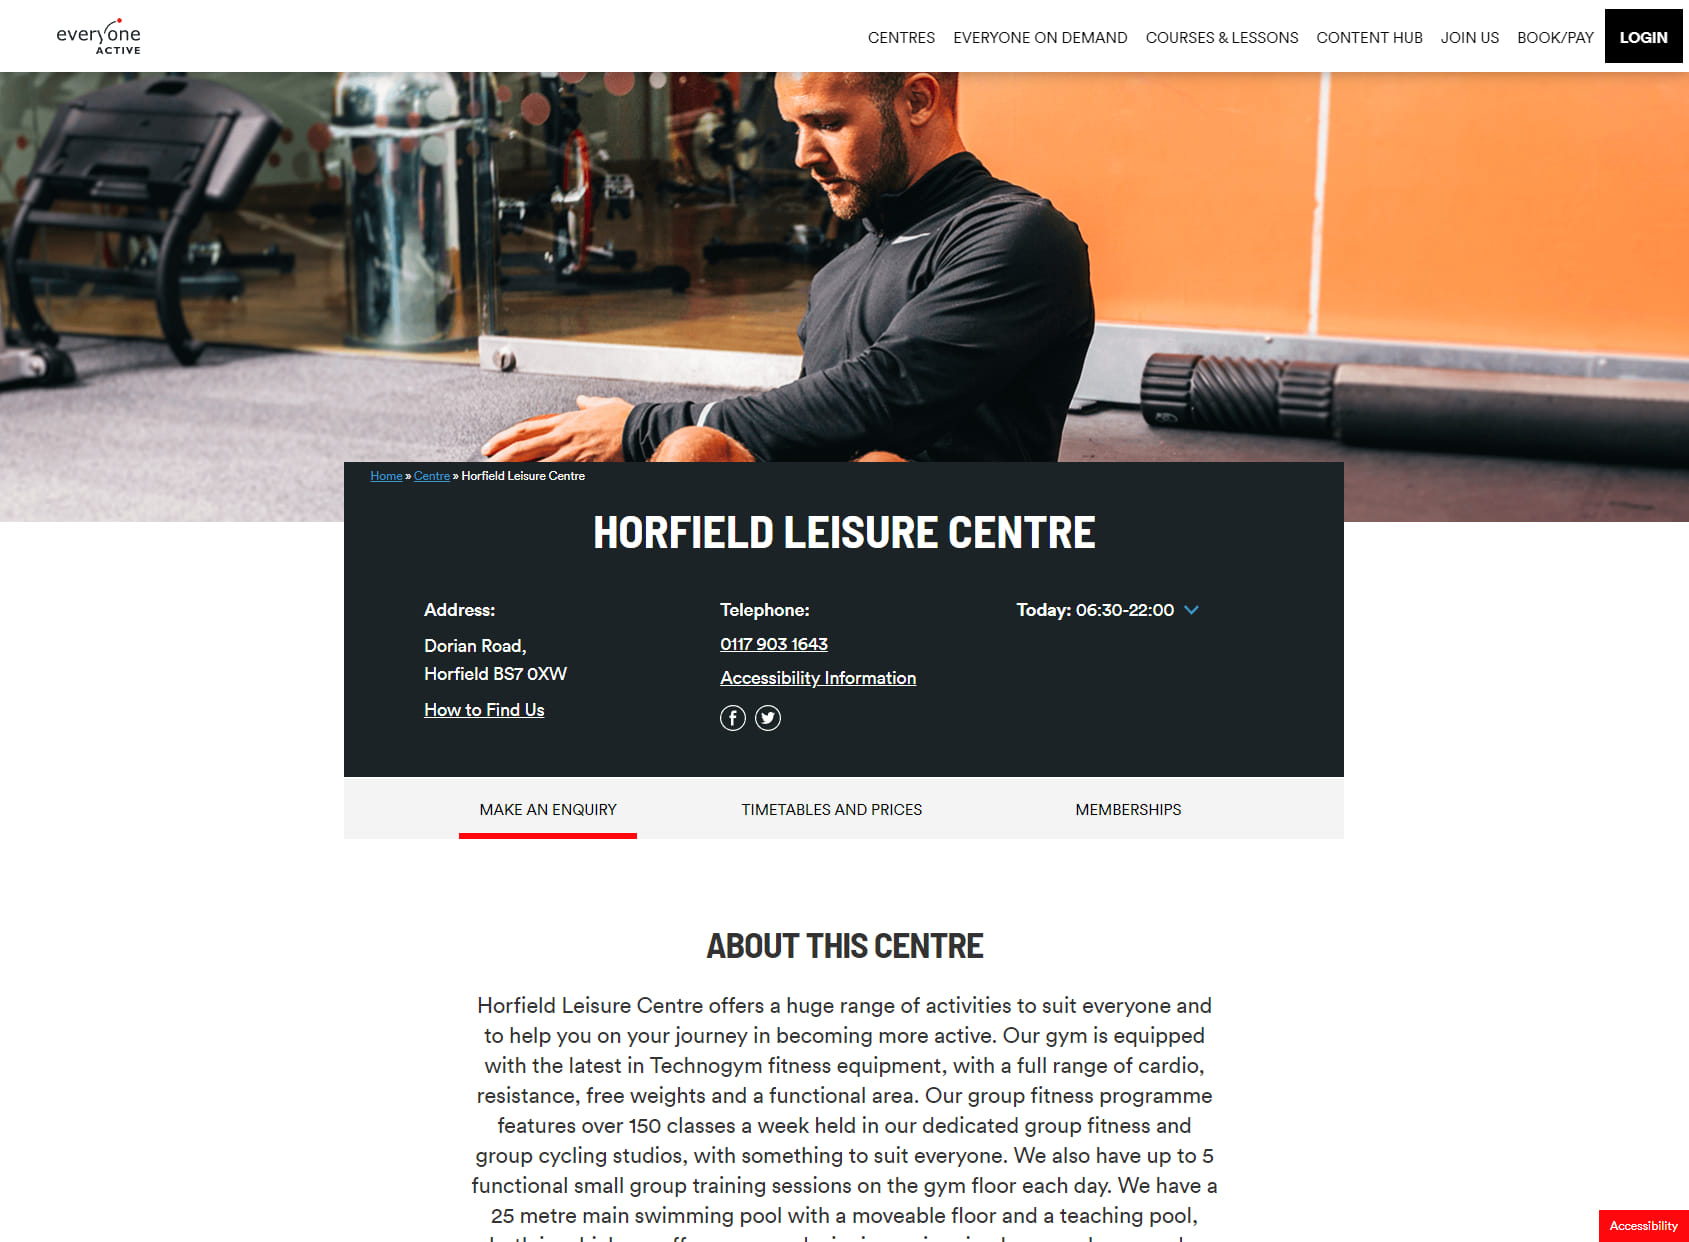 Horfield Leisure Centre